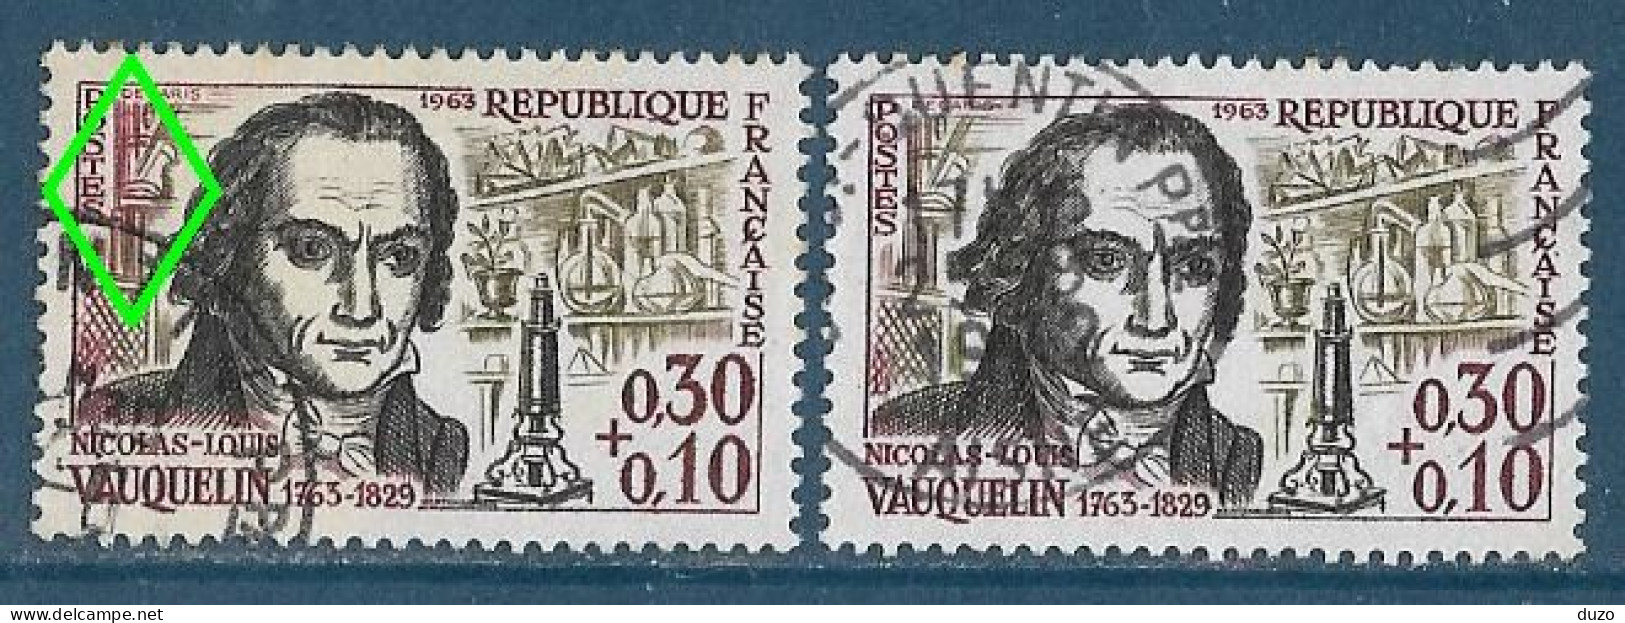 France 1963 - Variété - Y&T N° 1373 Vauquelin (oblit) - 1 Exemplaire Fond De Gauche En Rouge + 1 Normal Brun Olive. - Oblitérés